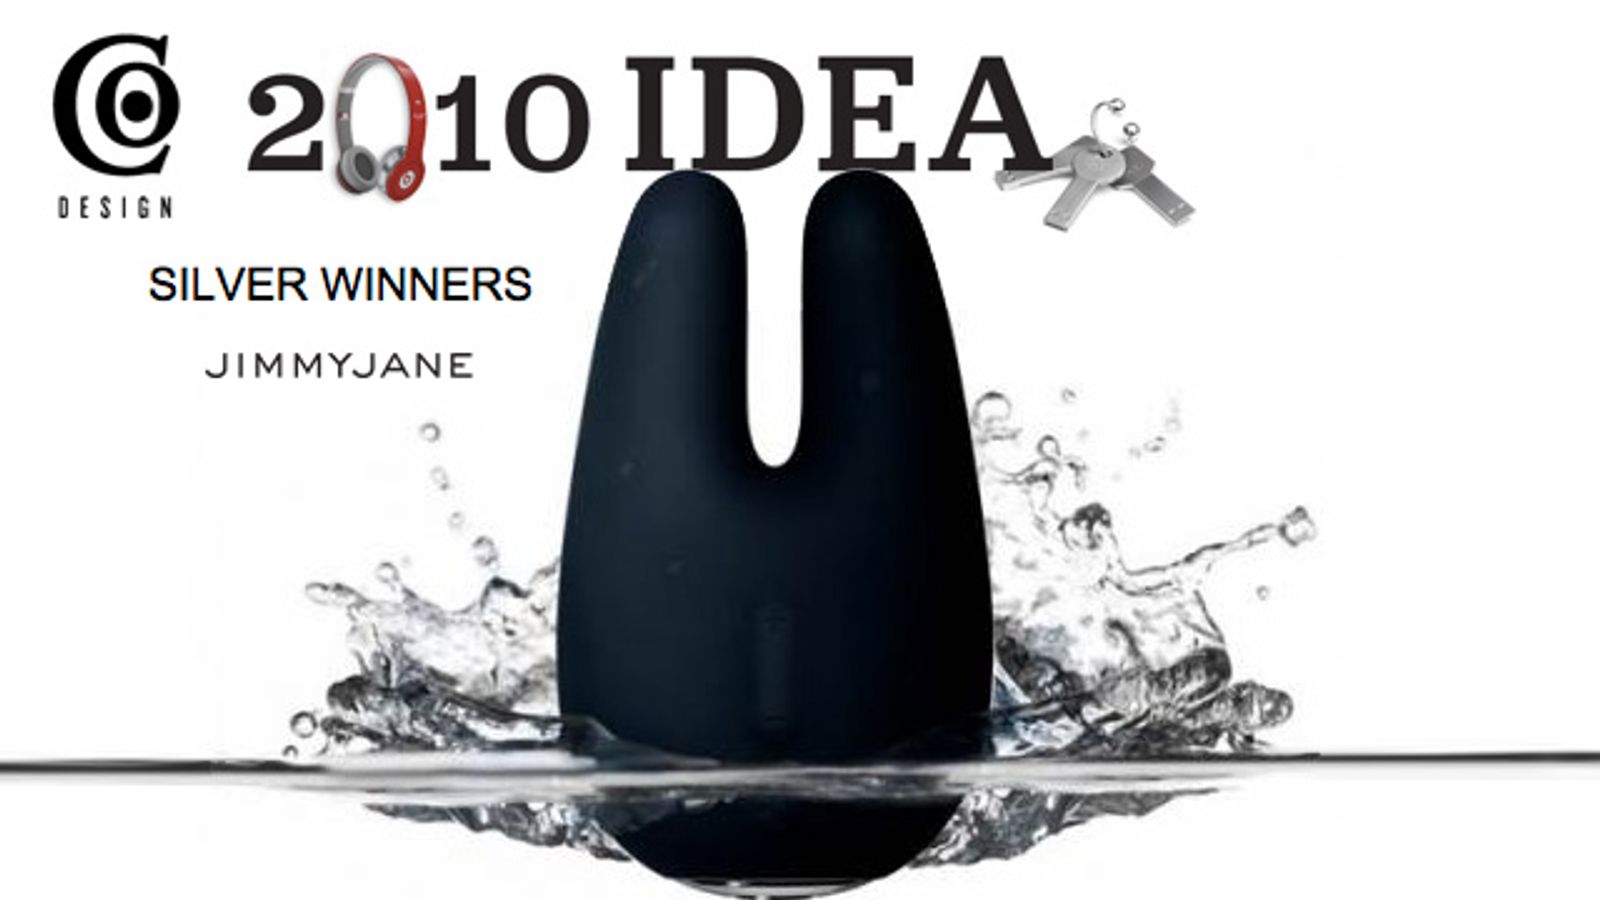 Jimmyjane’s Form 2 wins IDEA Award